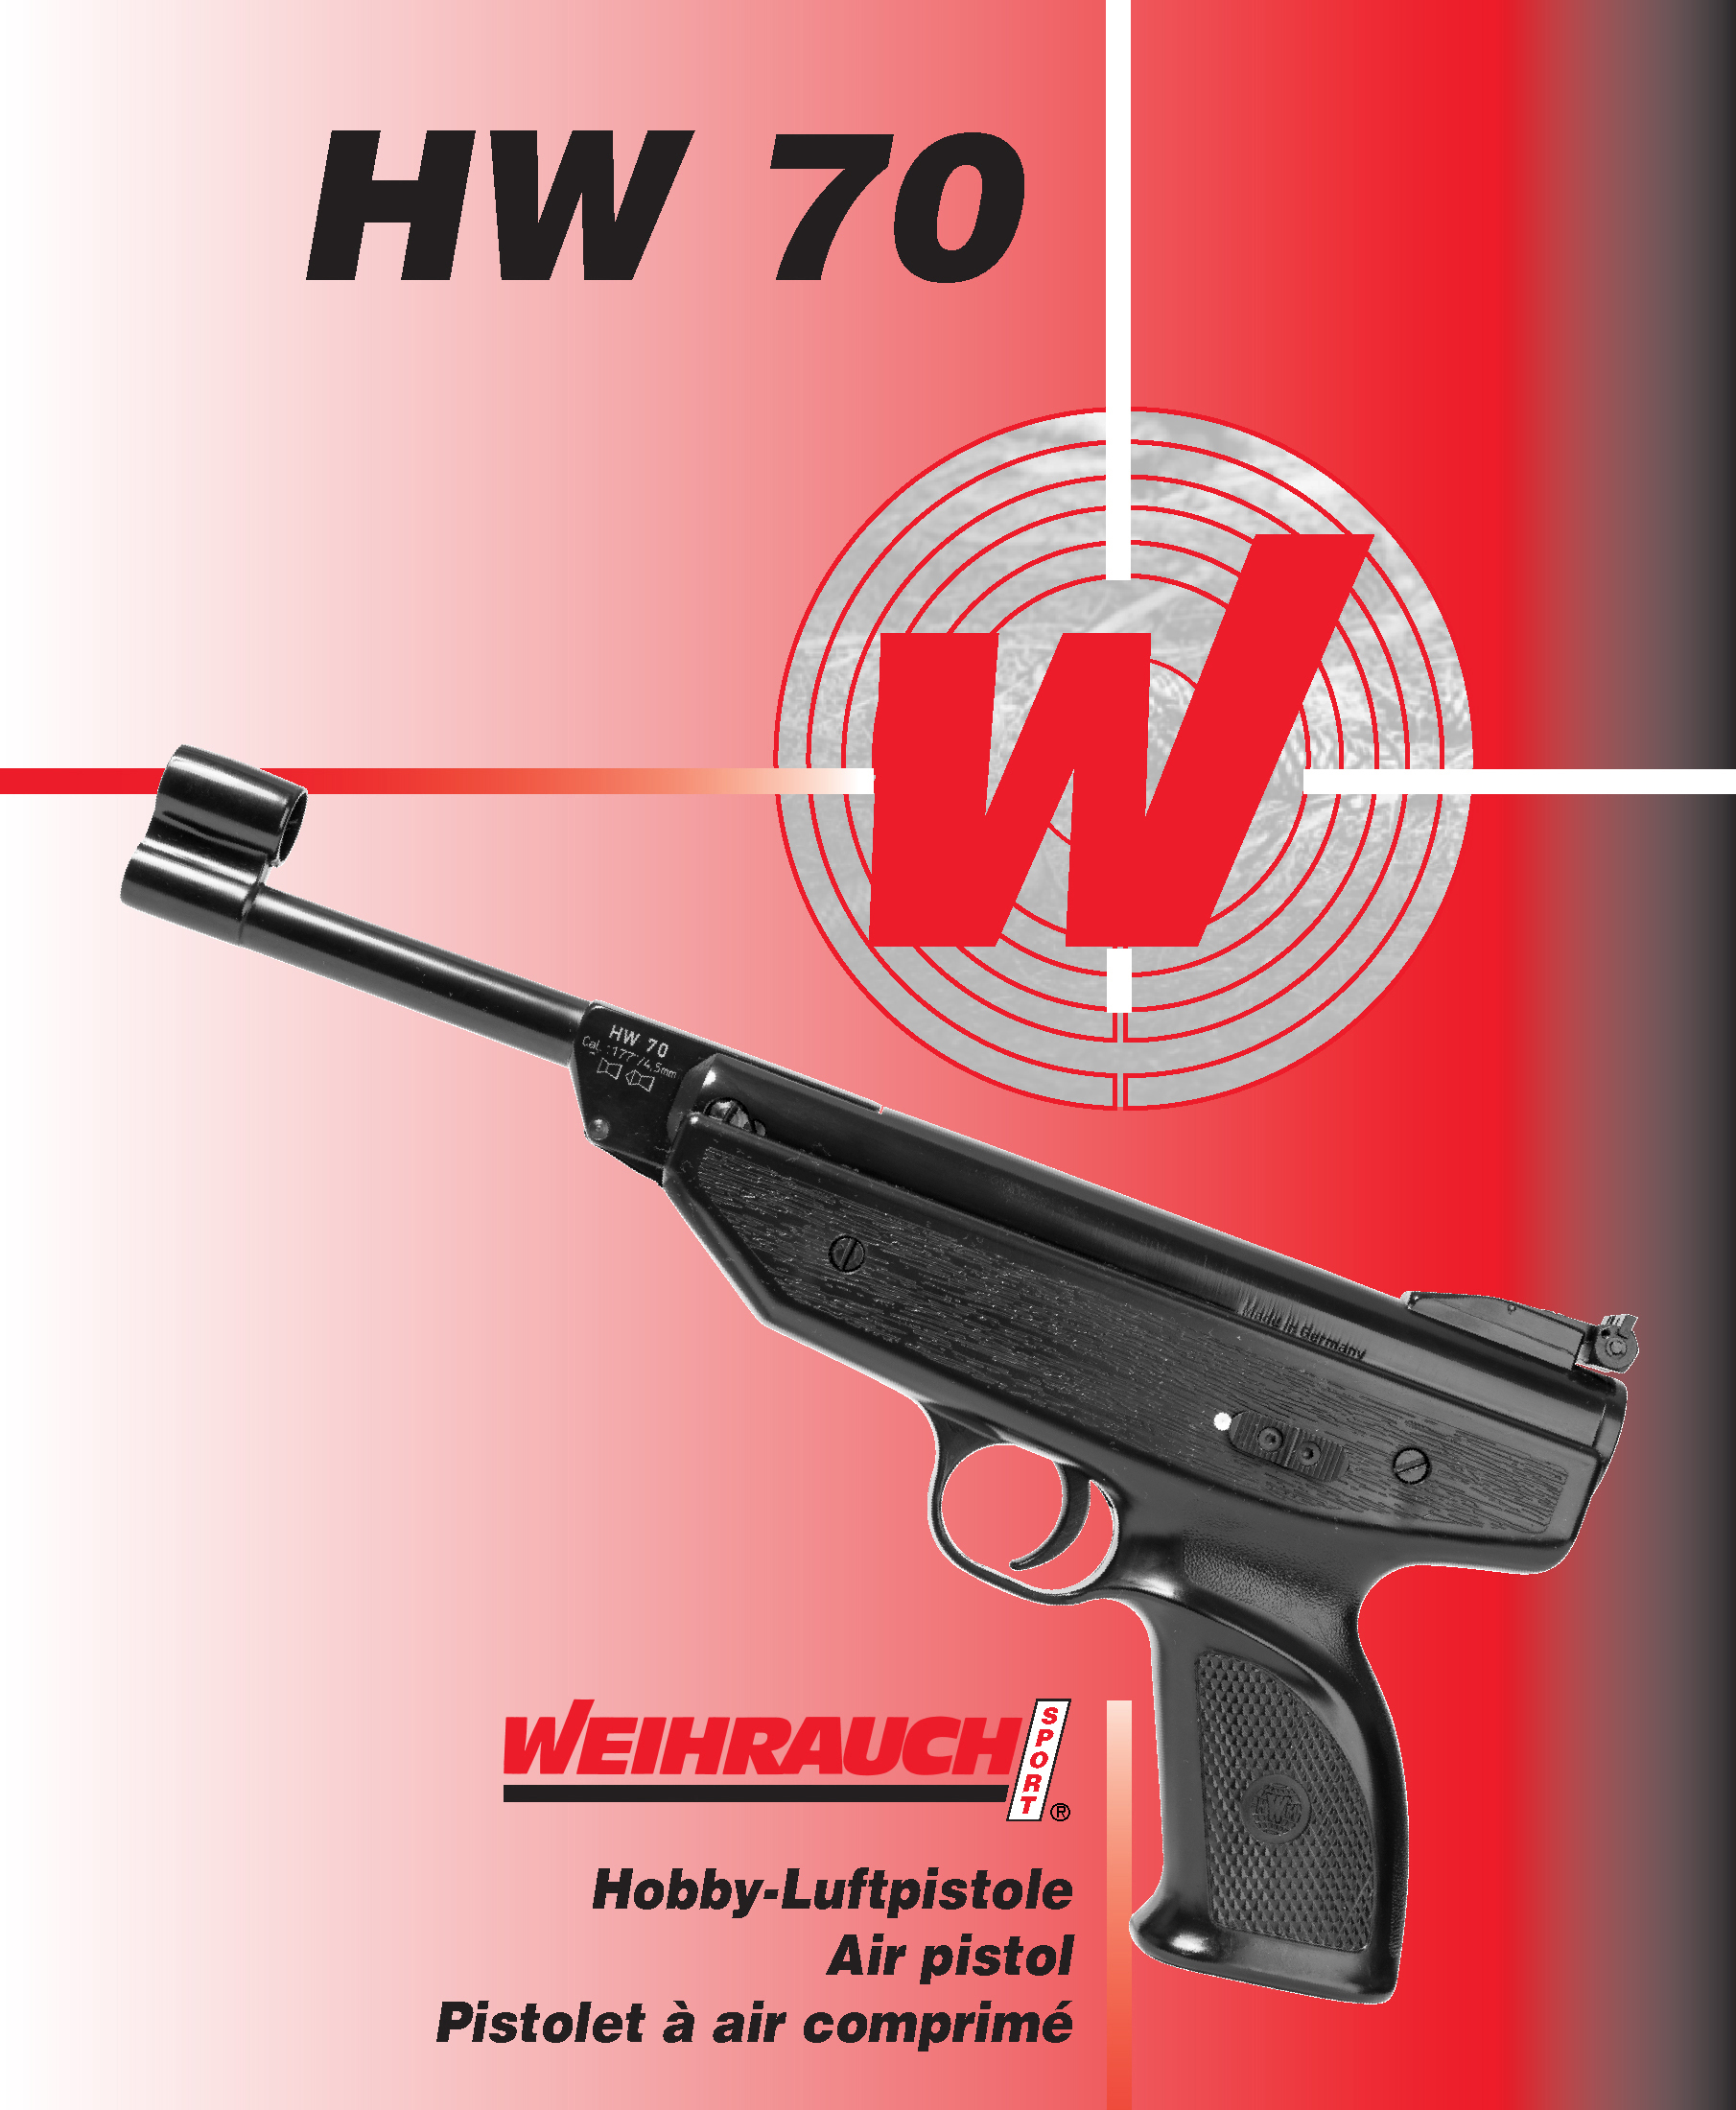 Manual WW Luftpistole HW 70 05 2015 1